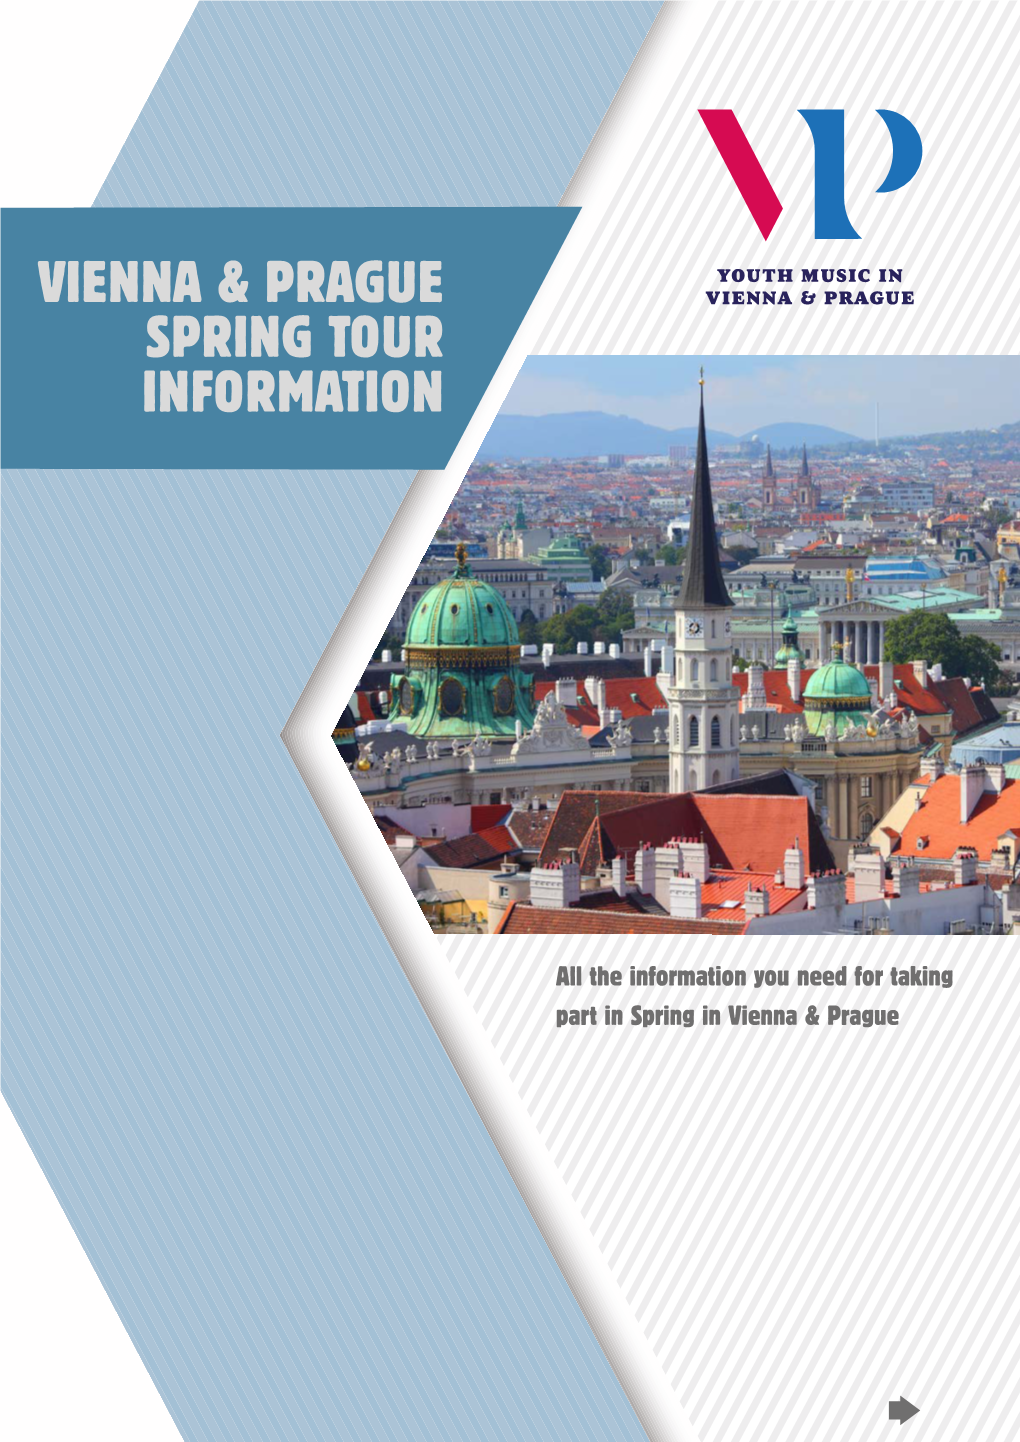 Vienna & Prague Spring Tour Information